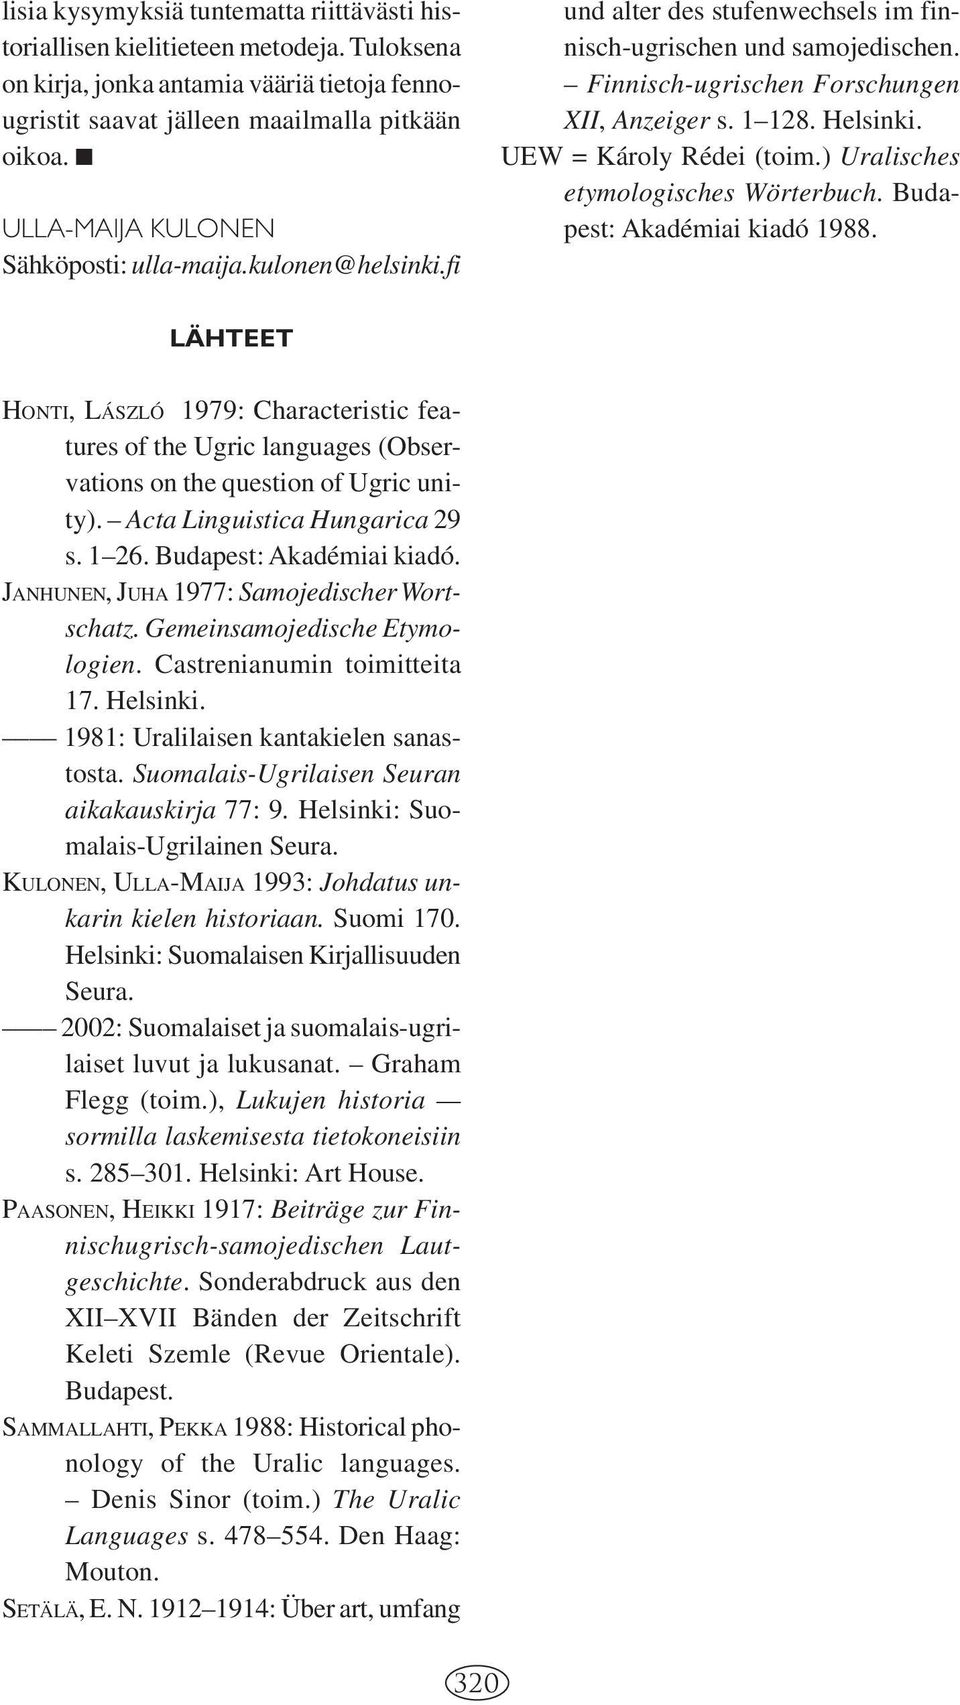 UEW = Károly Rédei (toim.) Uralisches etymologisches Wörterbuch. Budapest: Akadémiai kiadó 1988.